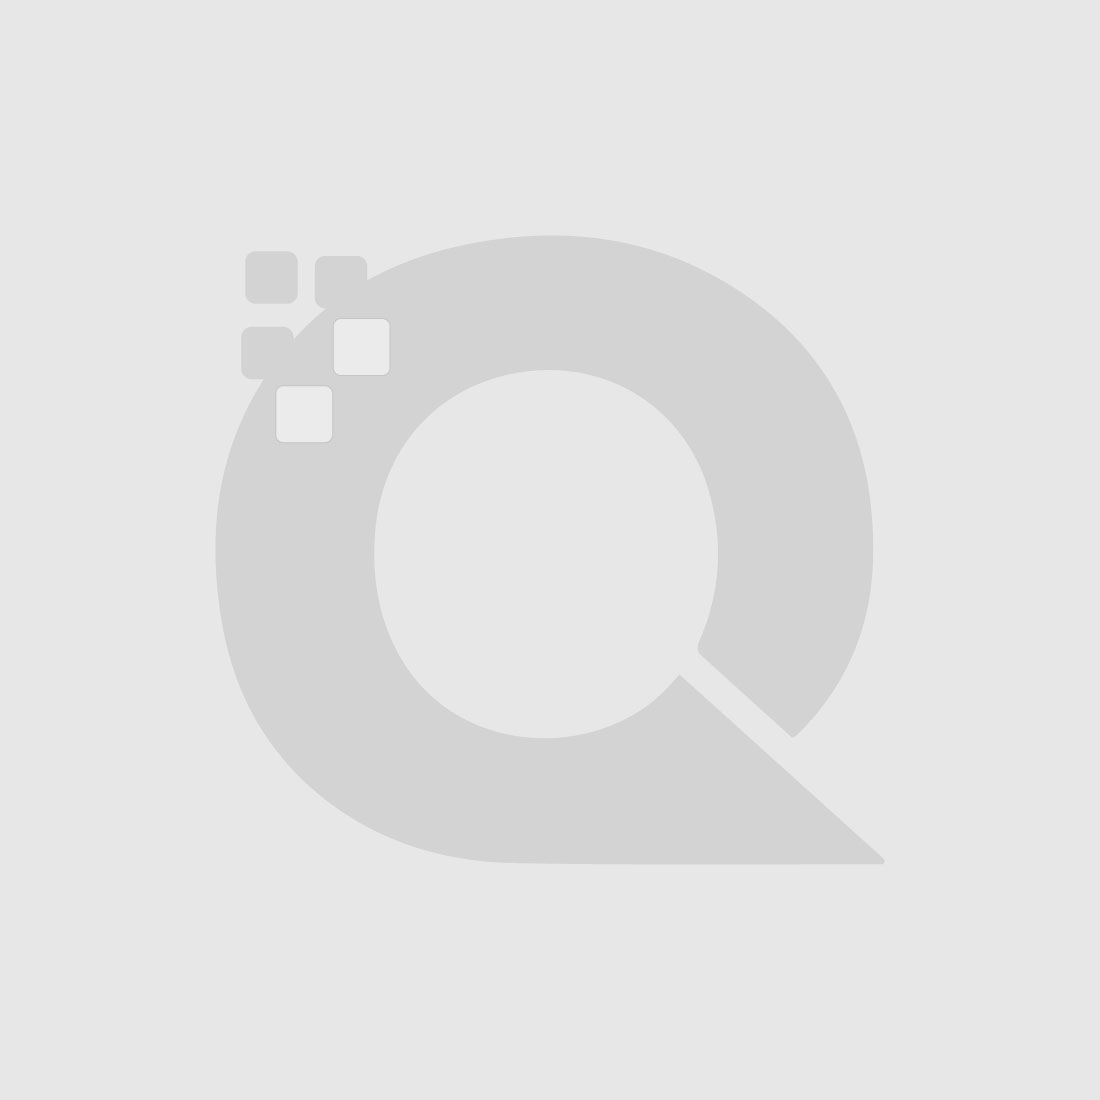 Guerniss Paris Velvet Matte Lipstick - GS004 - 3.5g